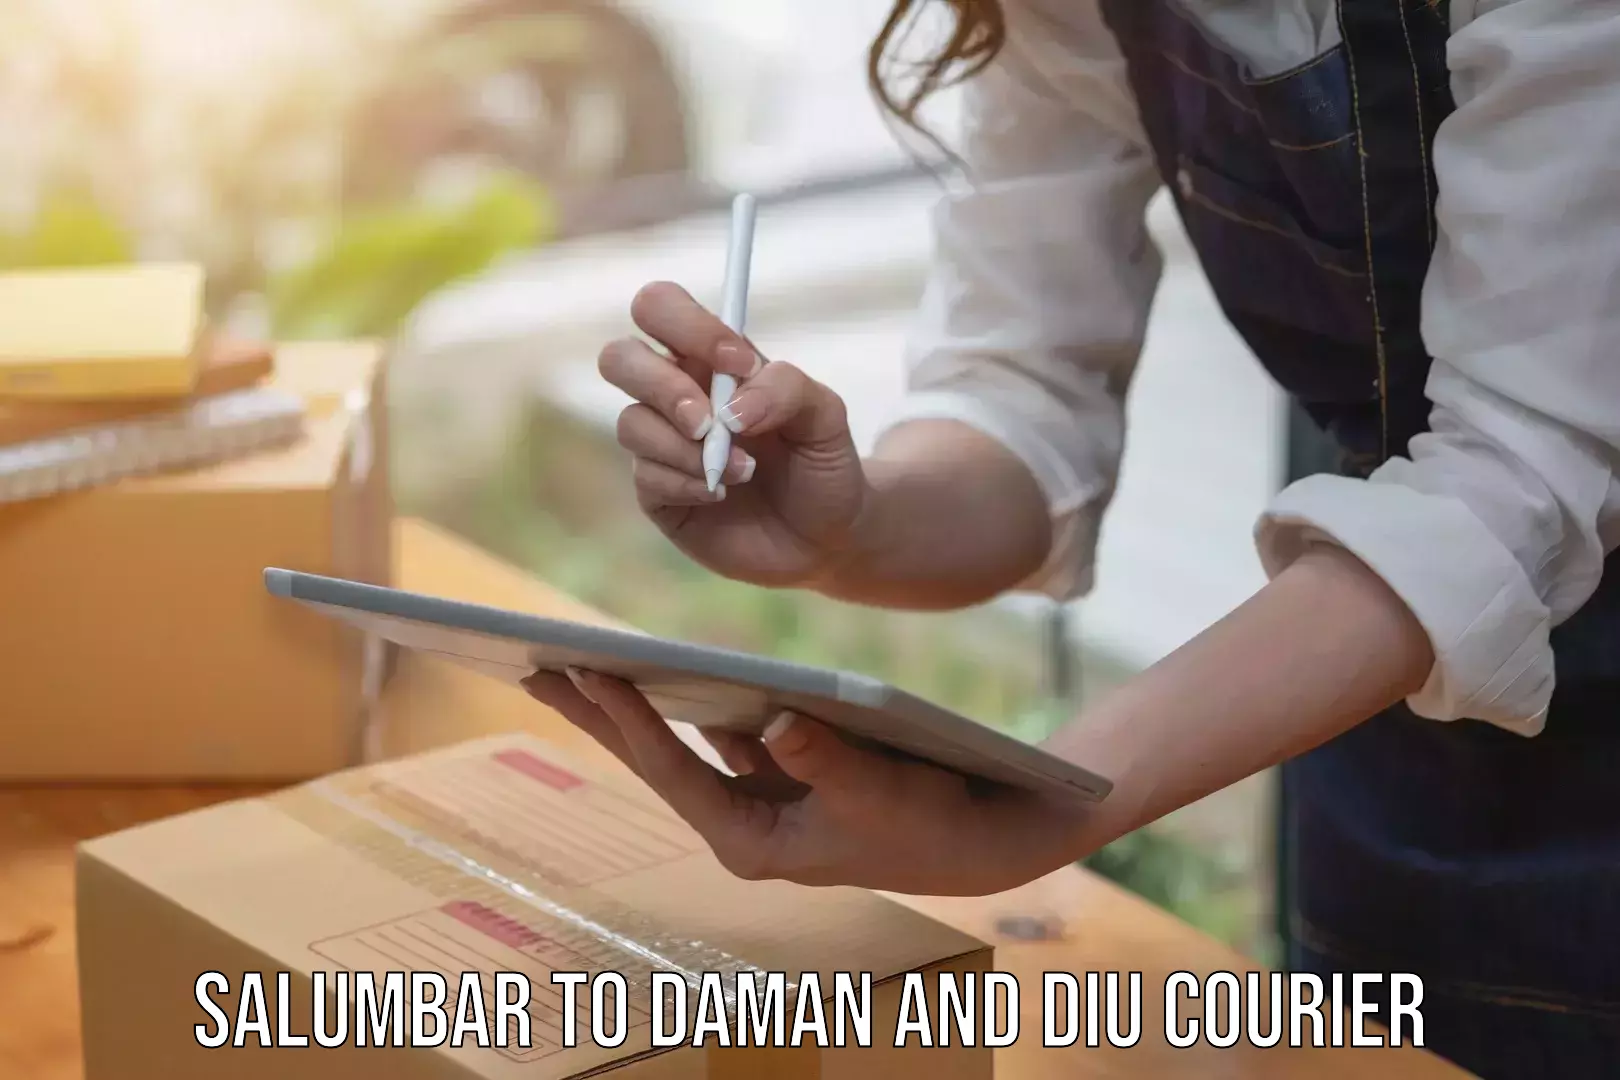 User-friendly courier app Salumbar to Daman and Diu